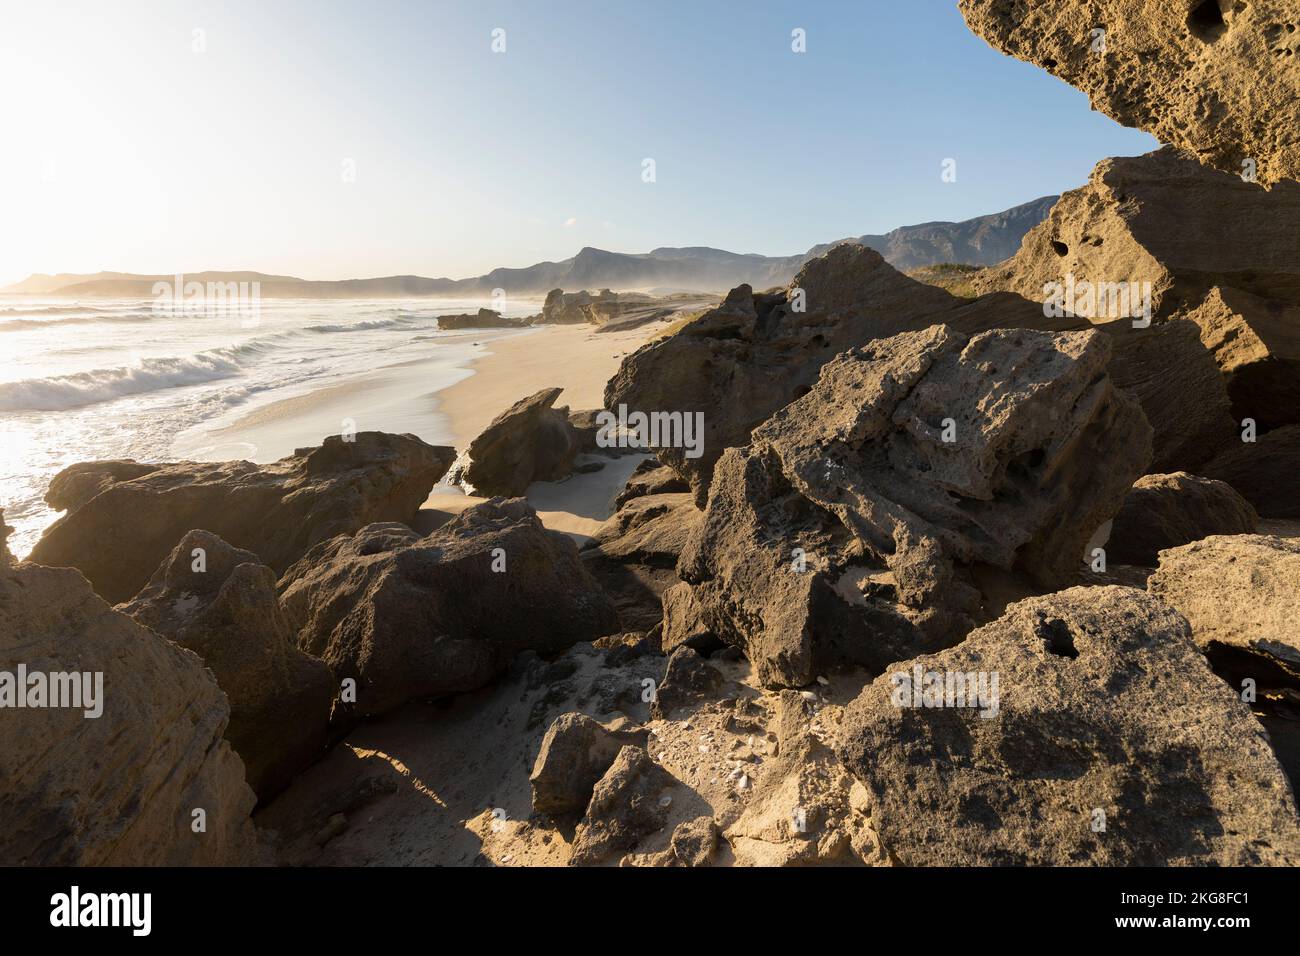 Afrique du Sud, Hermanus, vue des formations rocheuses sur la côte maritime Banque D'Images